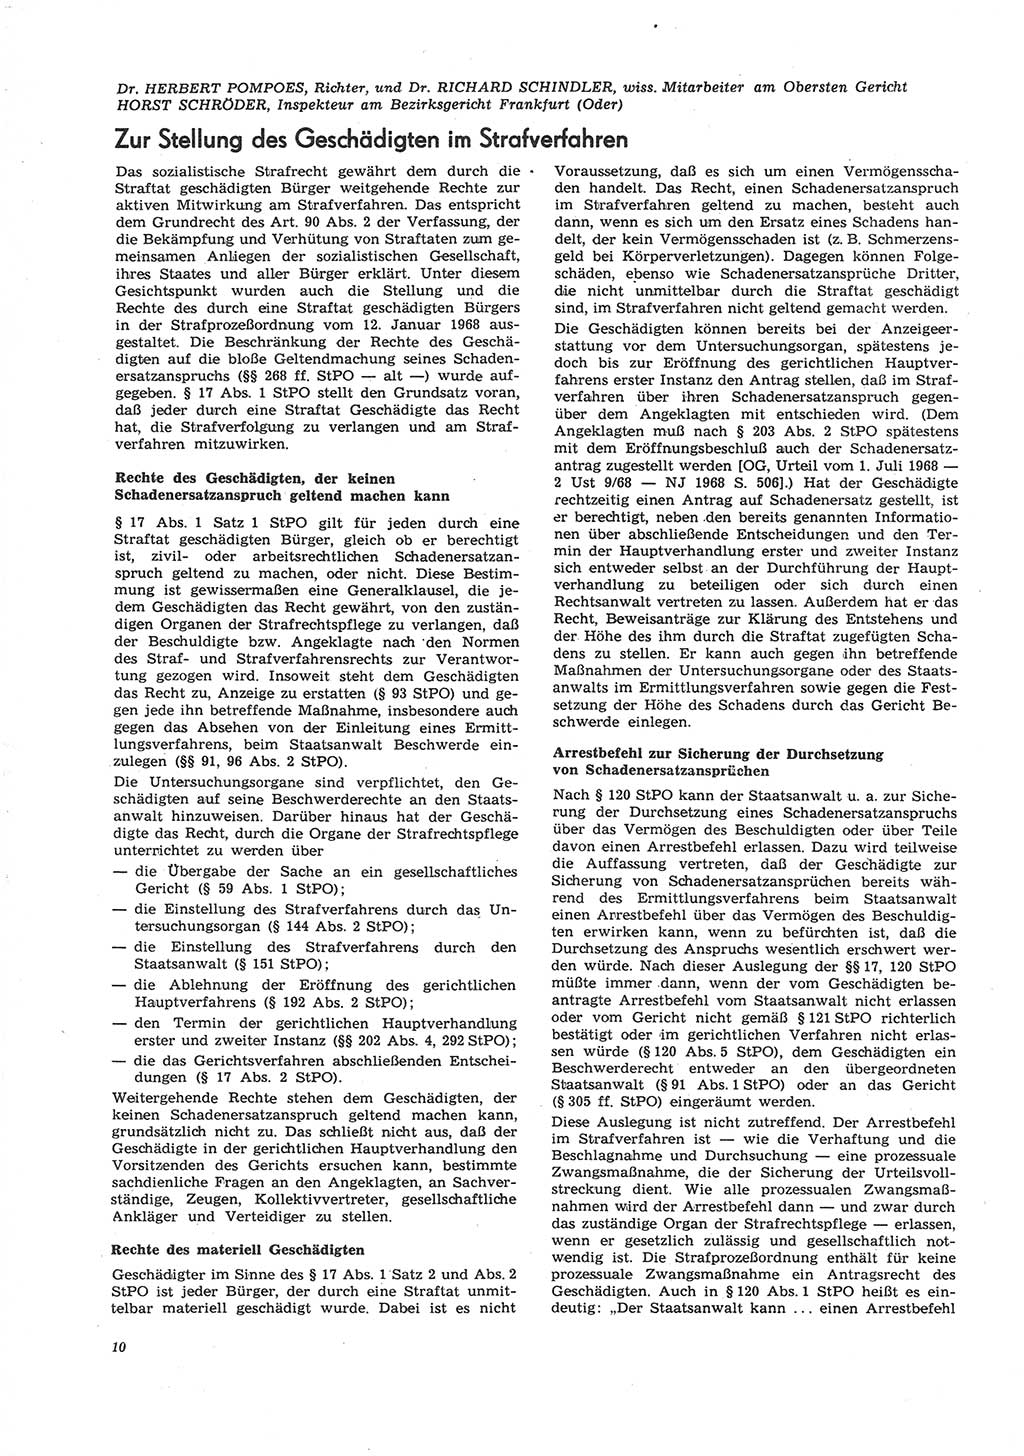 Neue Justiz (NJ), Zeitschrift für Recht und Rechtswissenschaft [Deutsche Demokratische Republik (DDR)], 26. Jahrgang 1972, Seite 10 (NJ DDR 1972, S. 10)